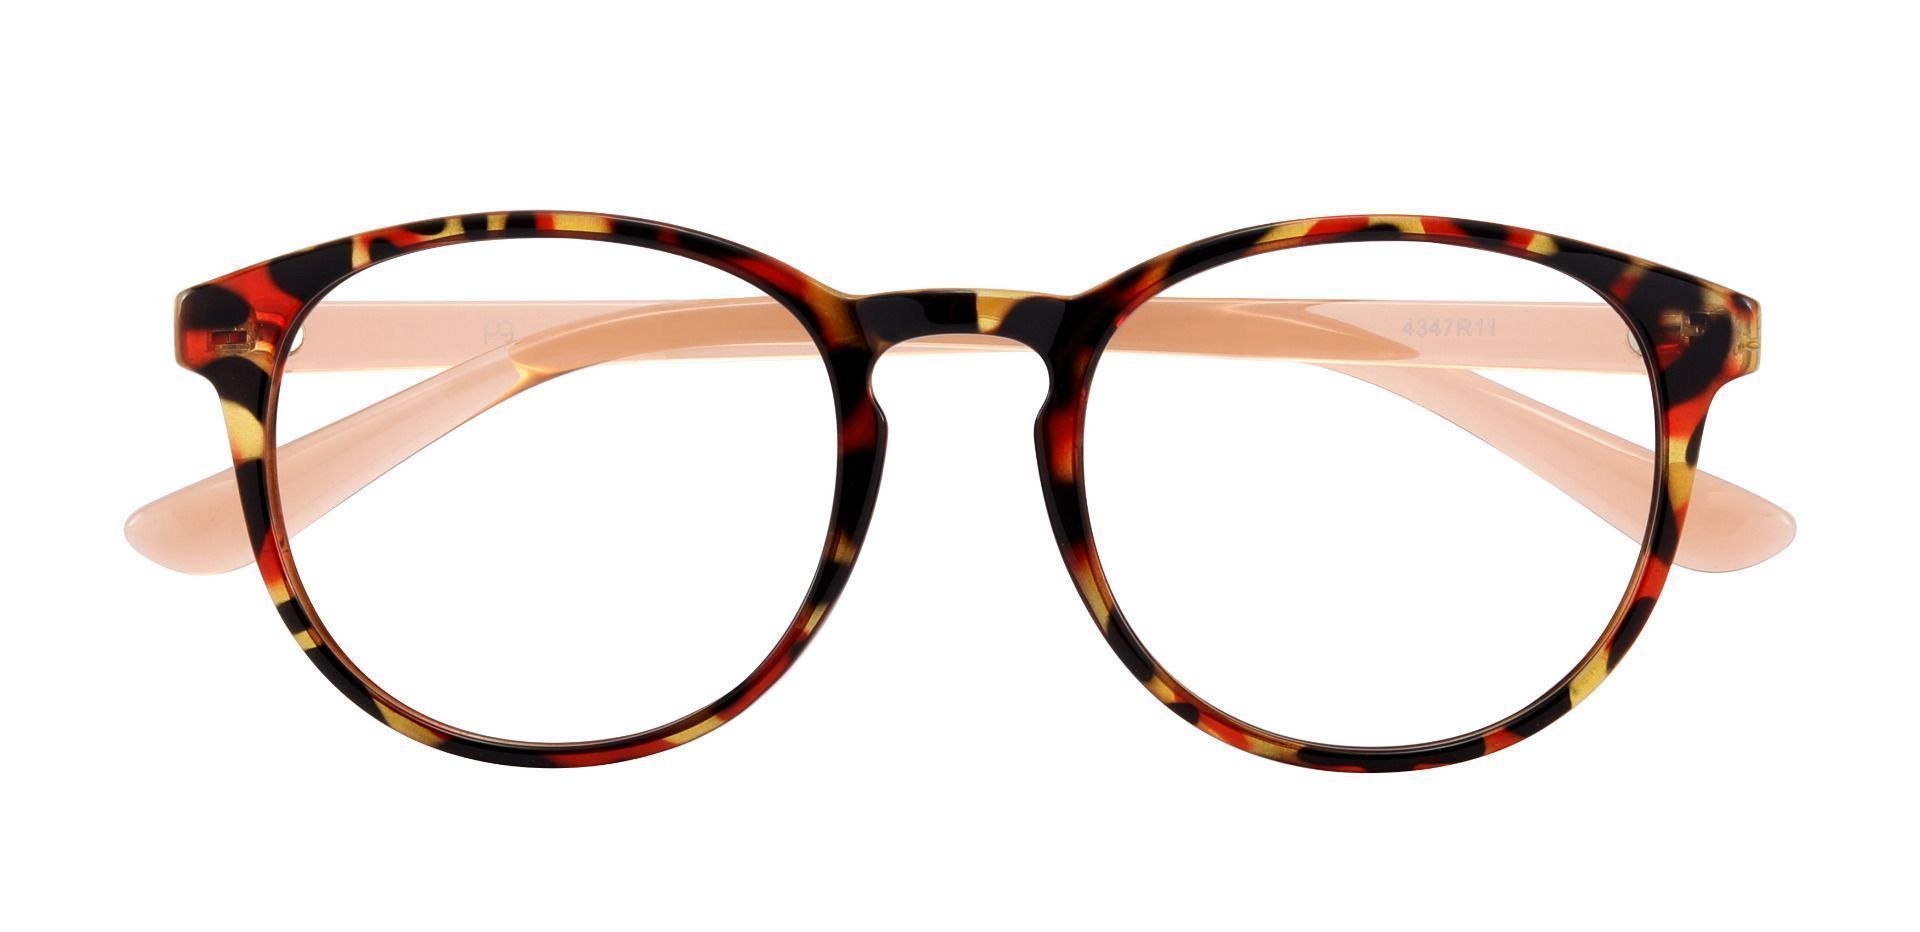 Clarita Oval Non-Rx Glasses - Red